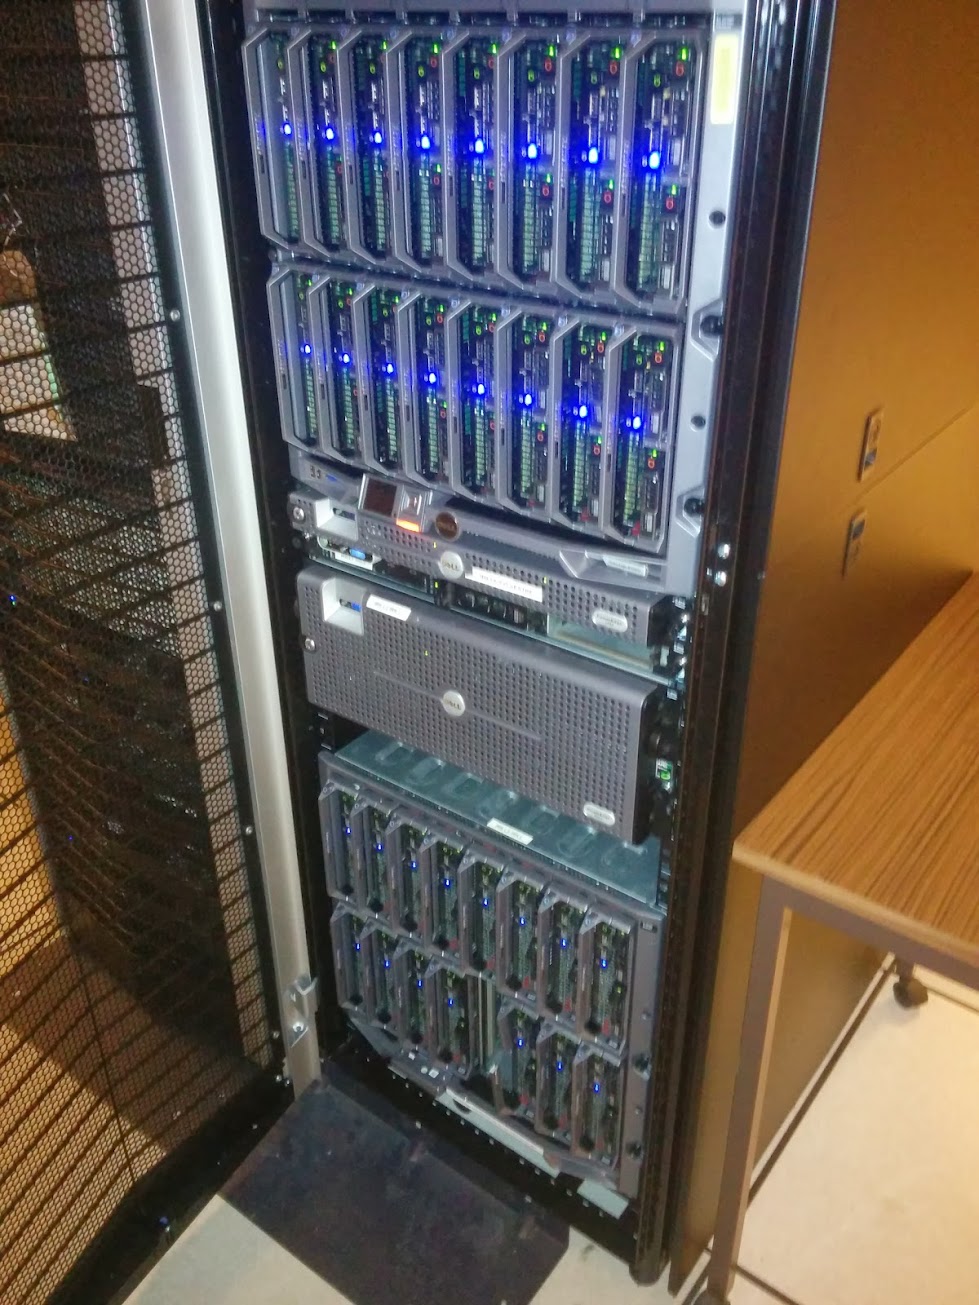 Old server - front